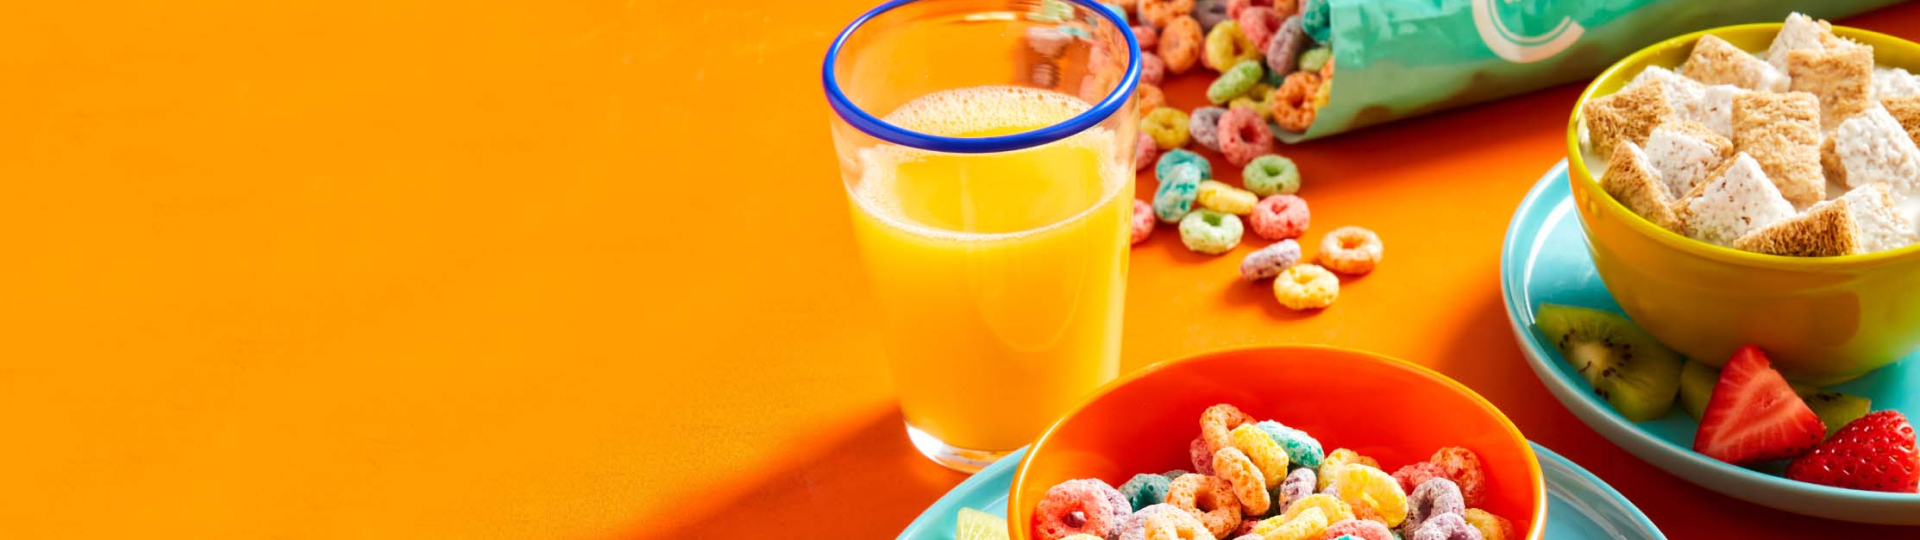 un grand bol de céréales Rigolo Fruits Compliments débordant de couleurs vives et un verre de jus d'orange